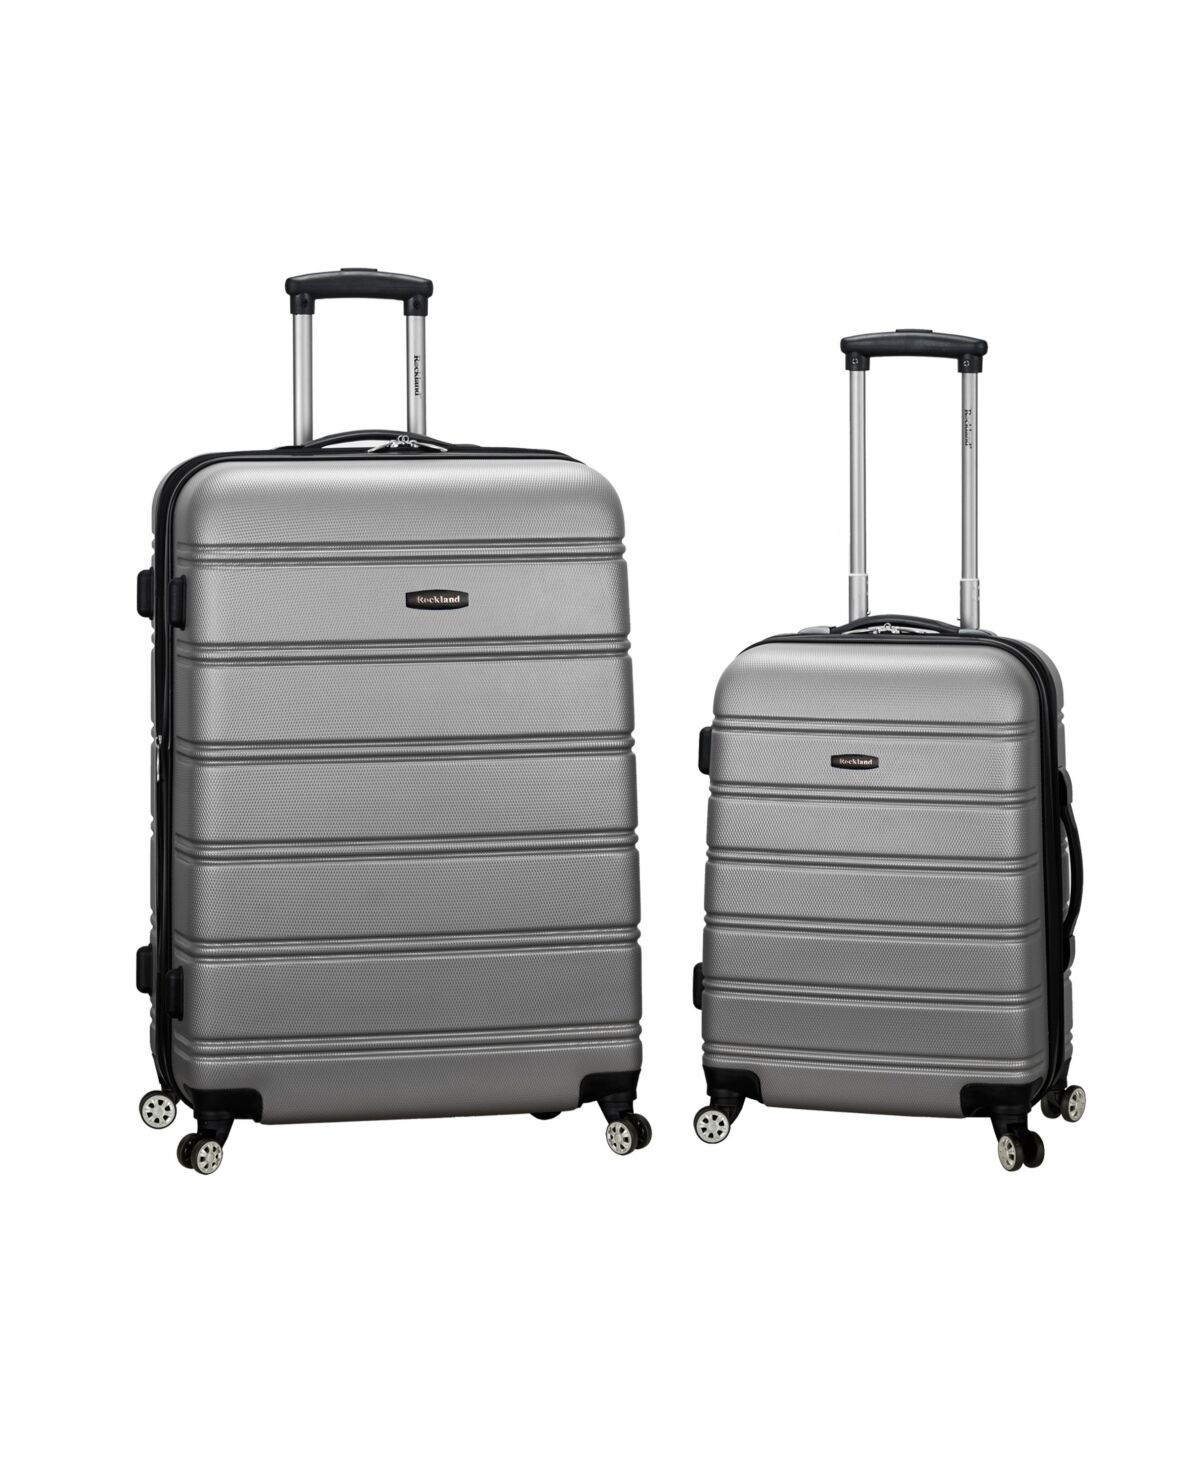 Rockland 2-Pc. Hardside Luggage Set - Silver